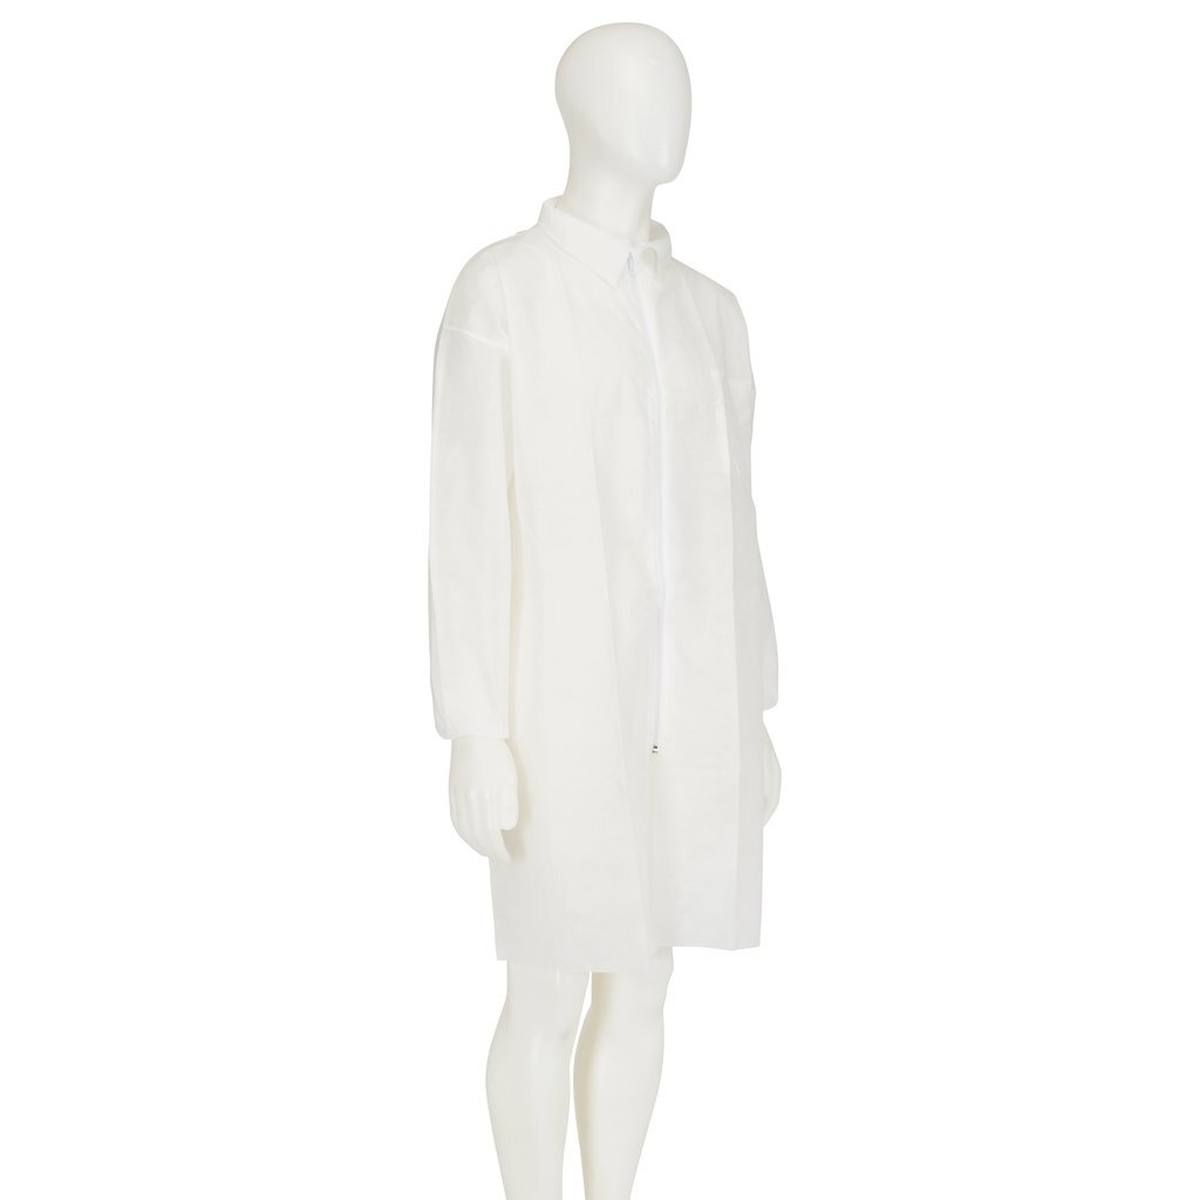 cappotto 3M 4400, bianco, taglia XL, materiale 100% polipropilene, traspirante, molto leggero, con chiusura a zip